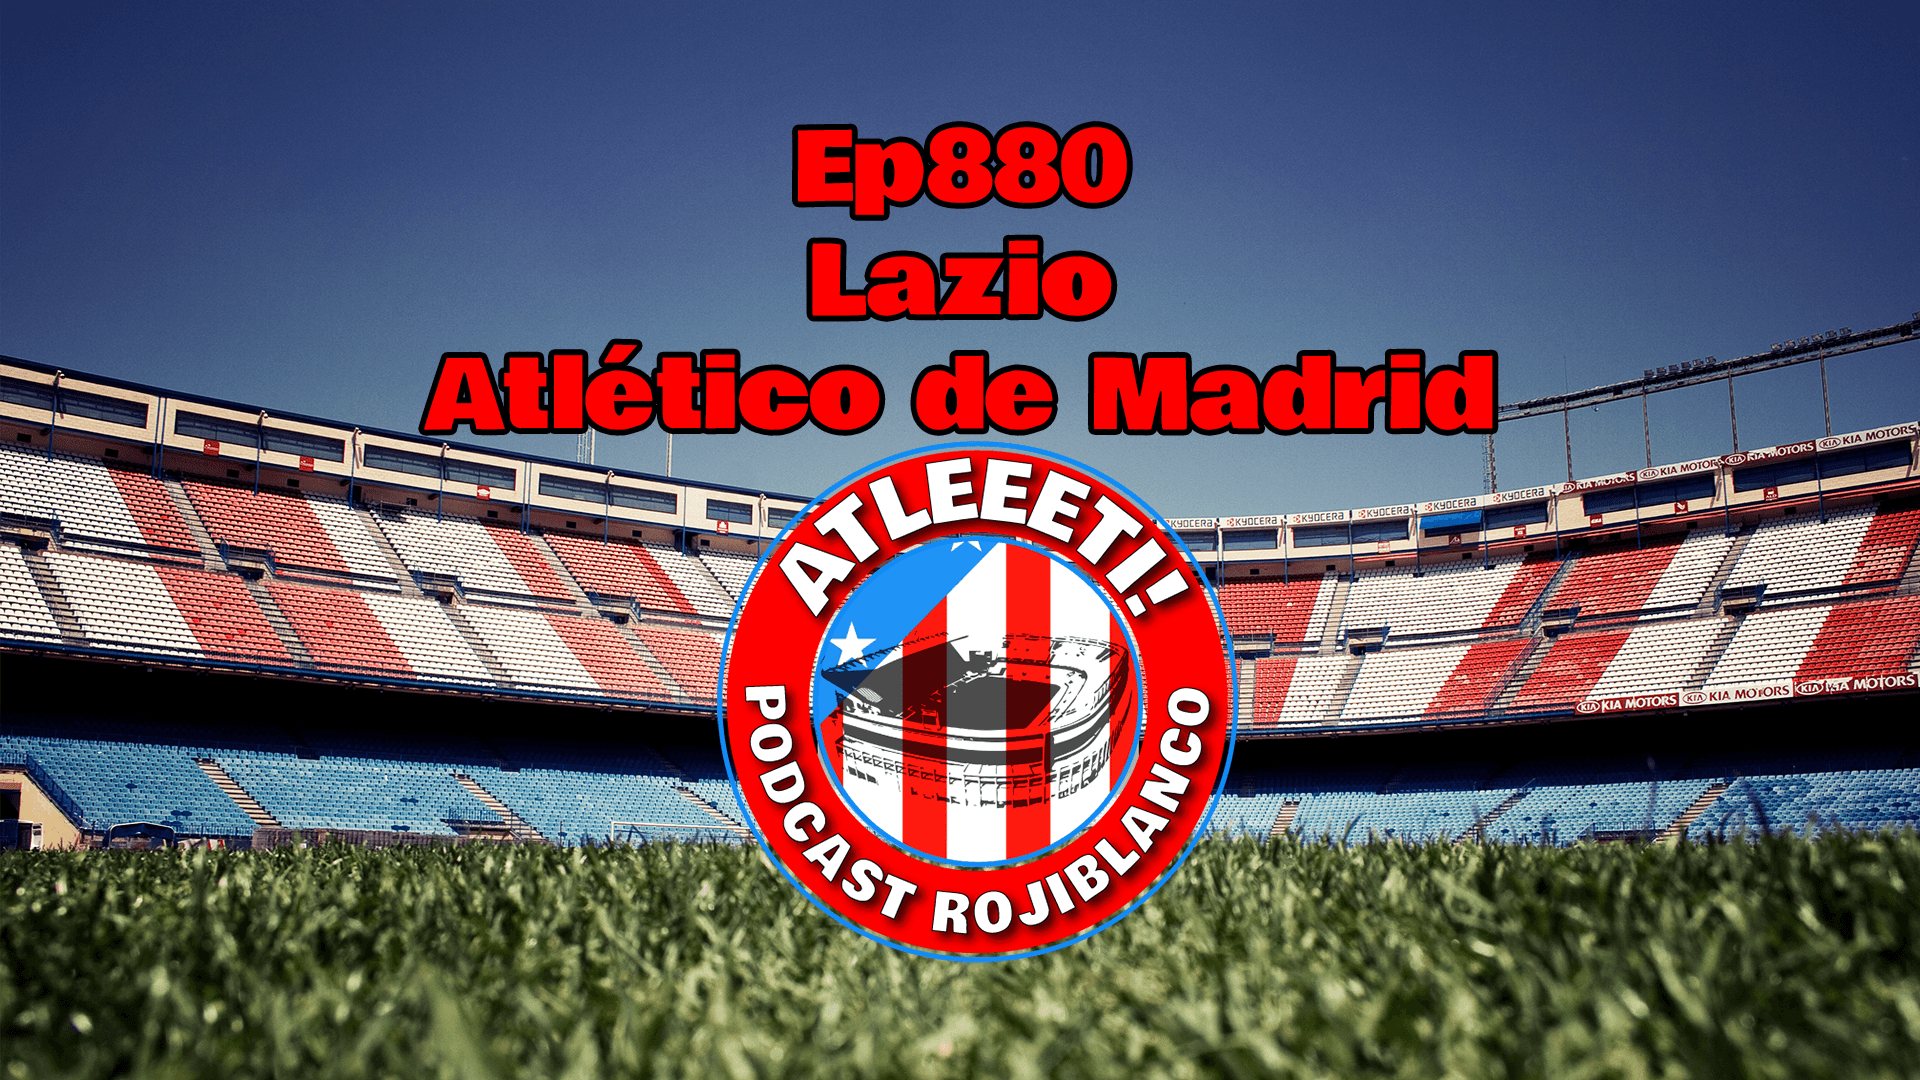 Ep880: Lazio 1-1 Atlético de Madrid